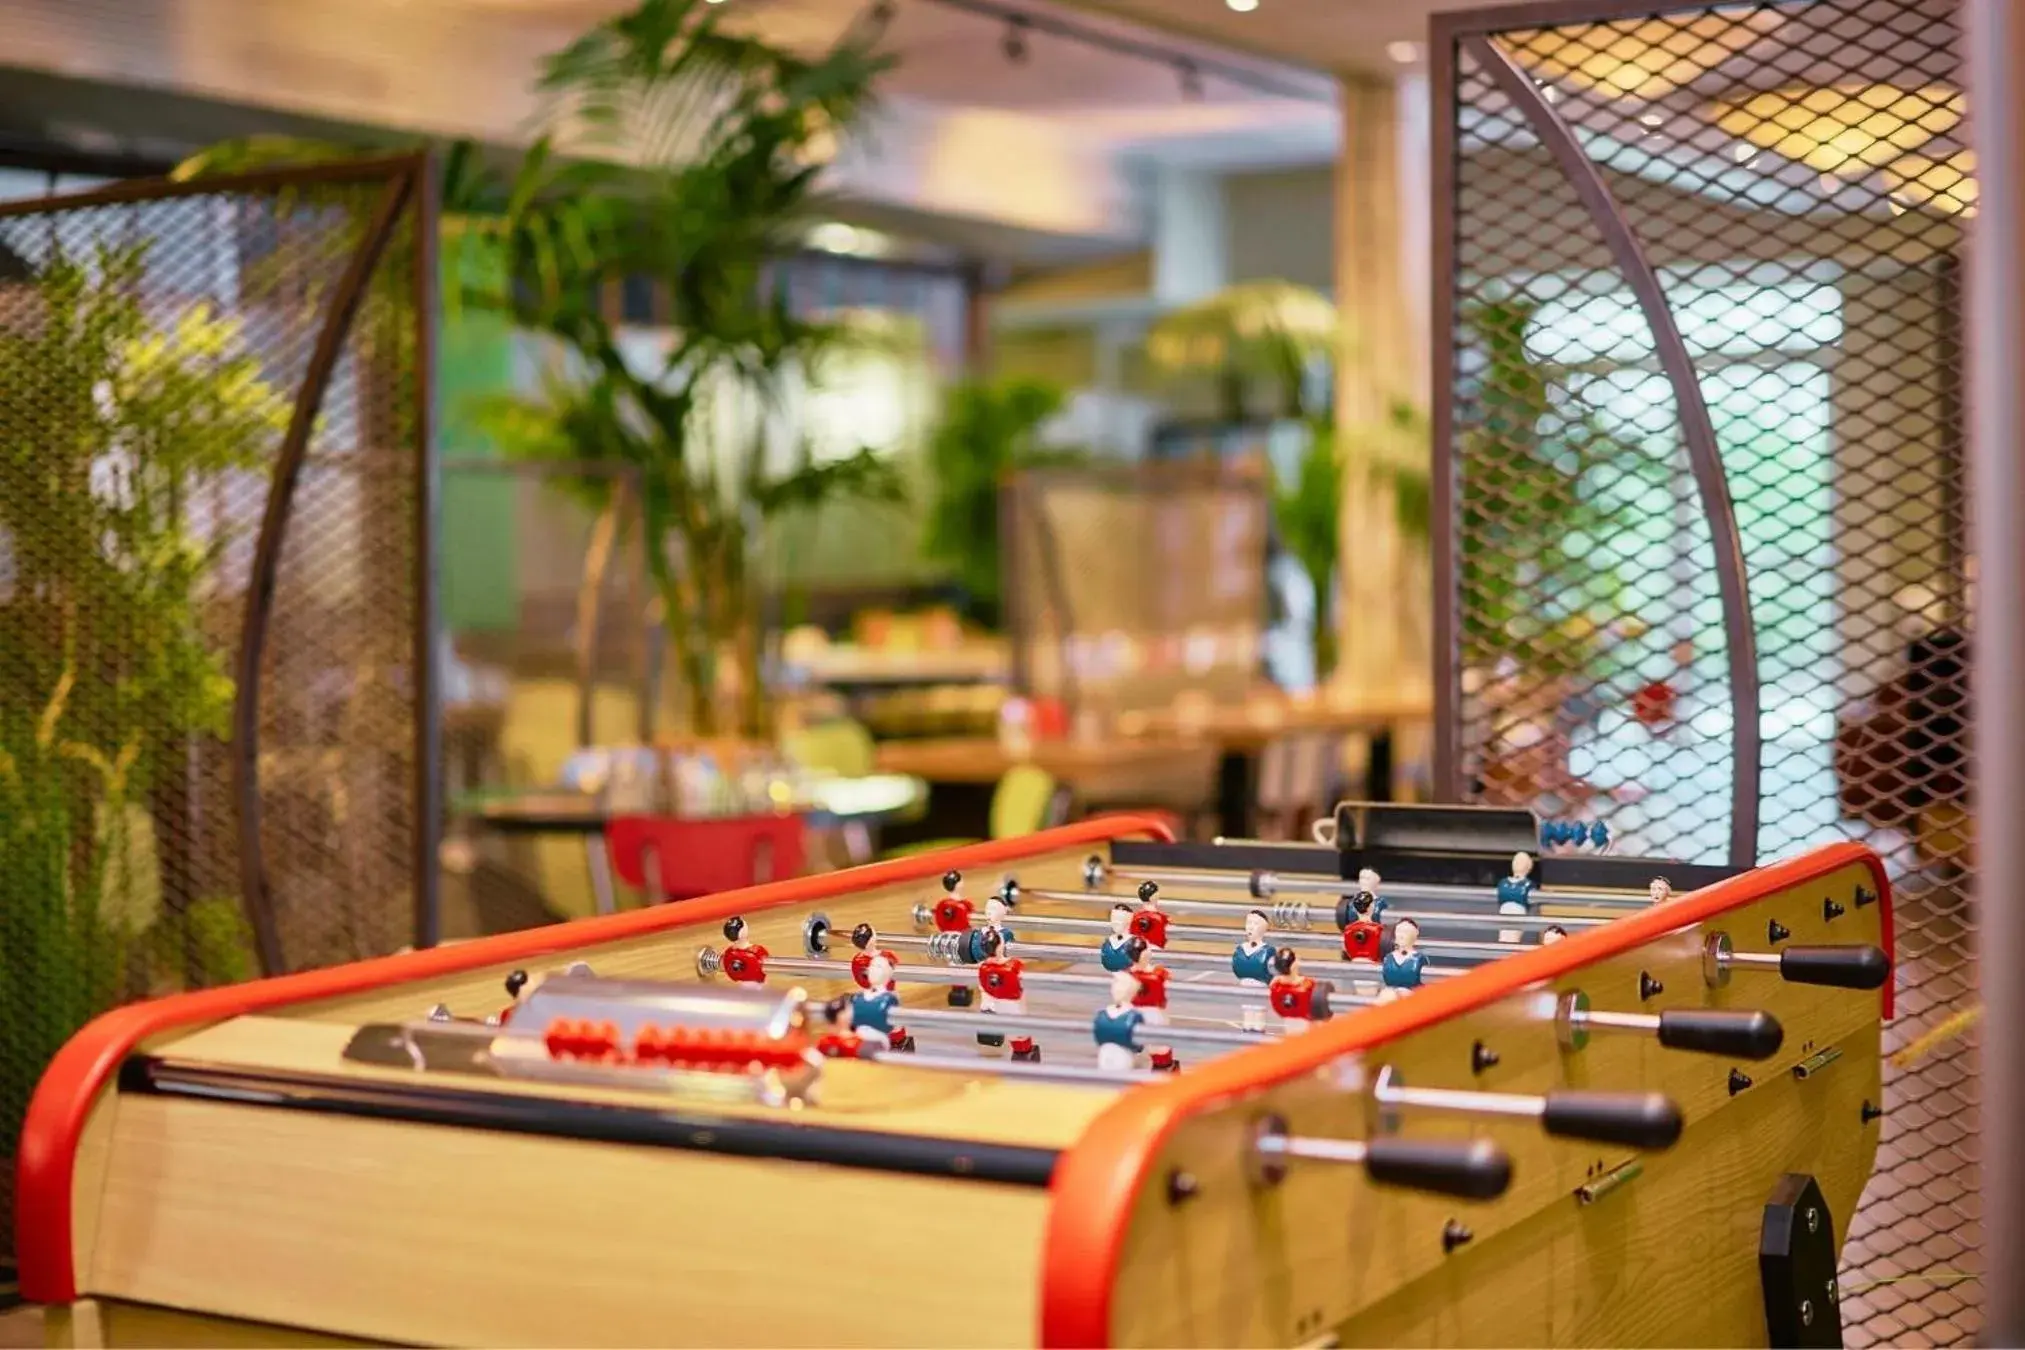 Game Room, Billiards in Sporting House Hôtel